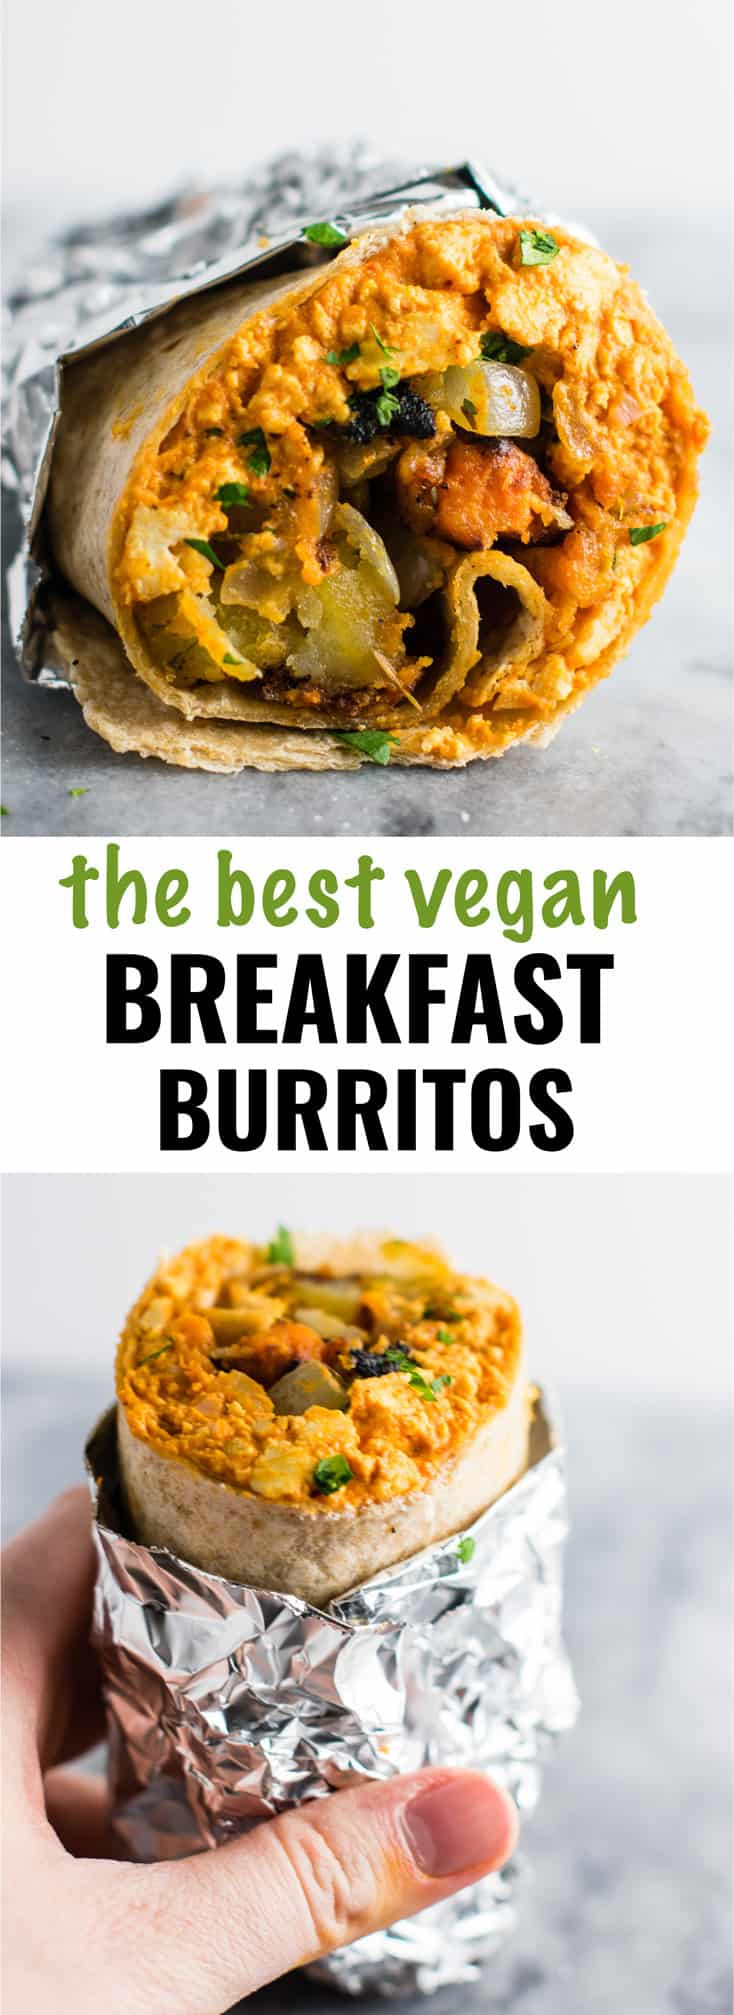 Vegan Burrito Recipes
 The Best Vegan Breakfast Burrito Recipe Build Your Bite